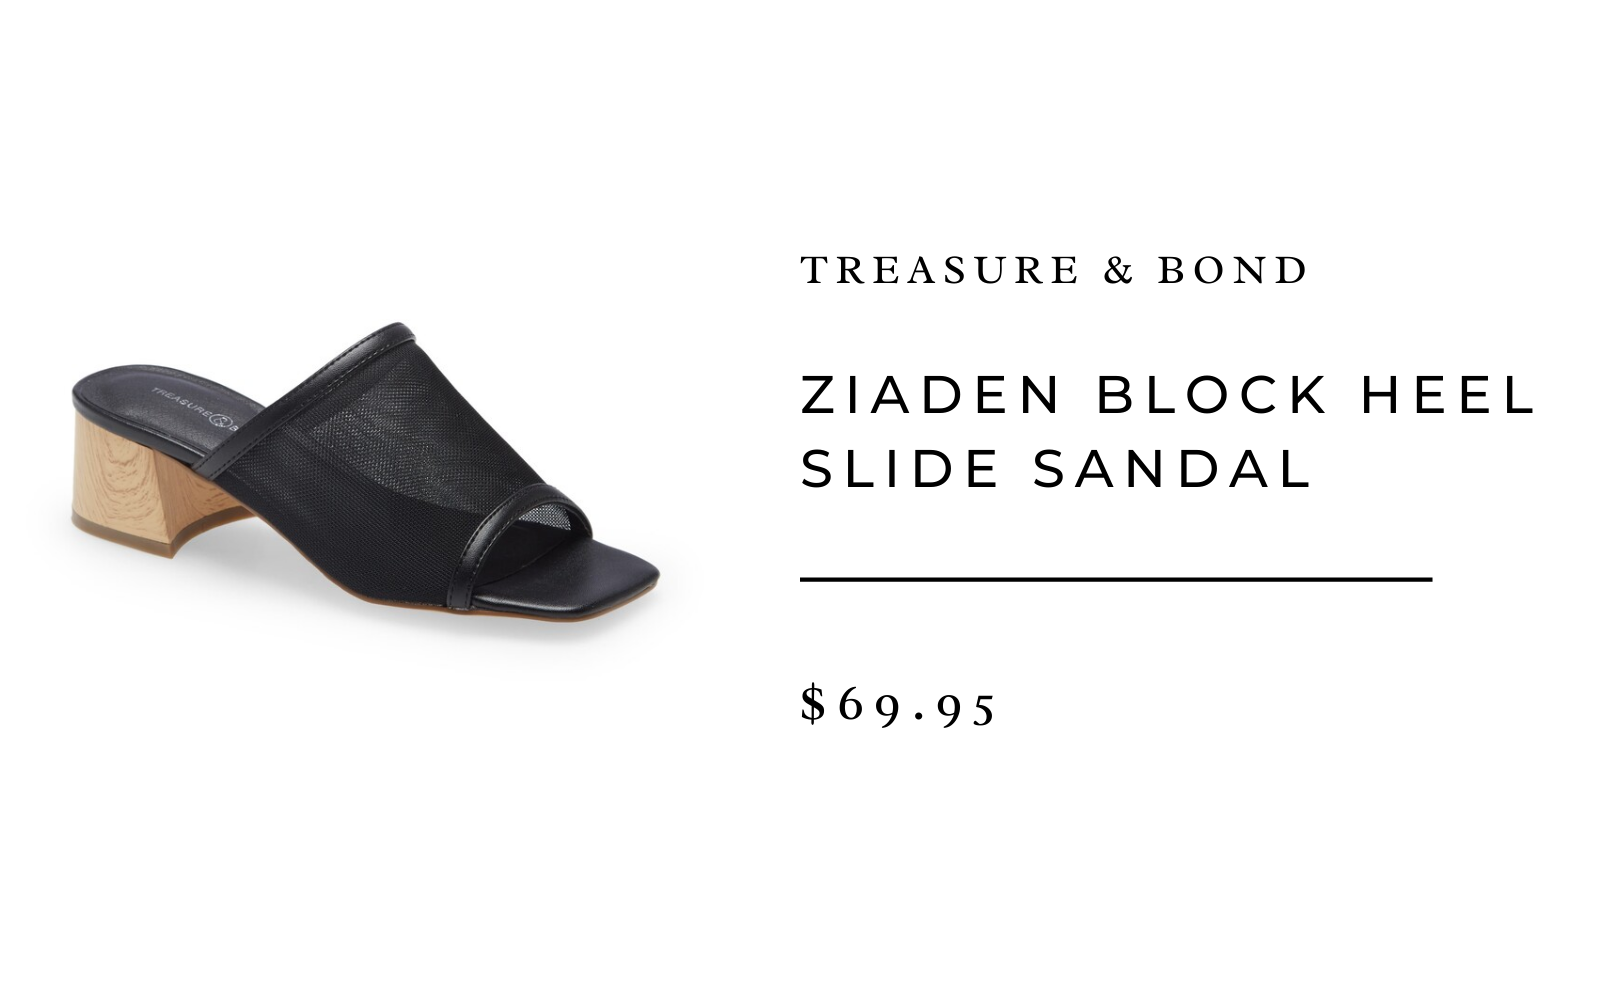 Ziaden Block Heel Slide Sandal